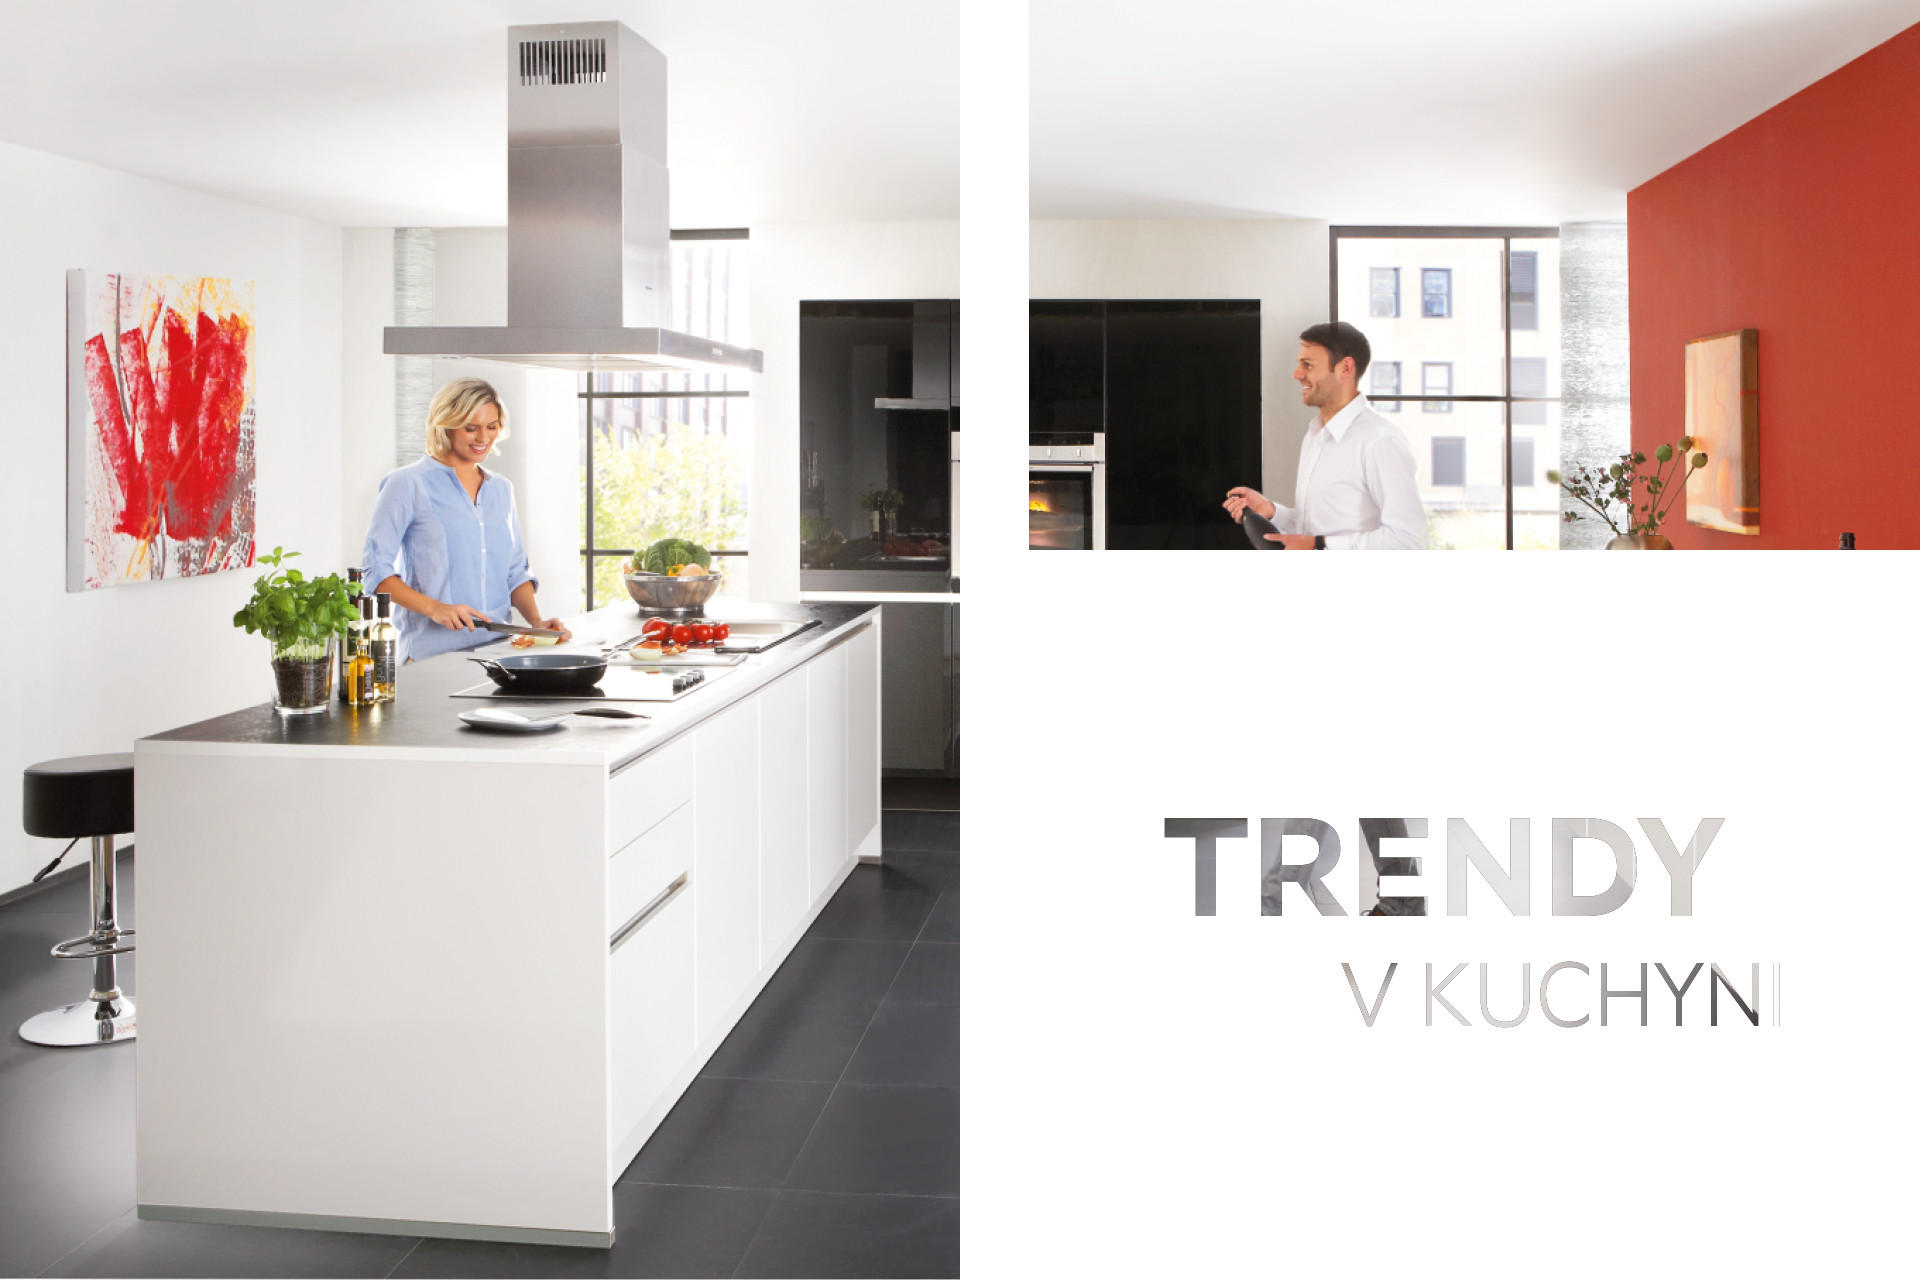 Kuchyňské trendy